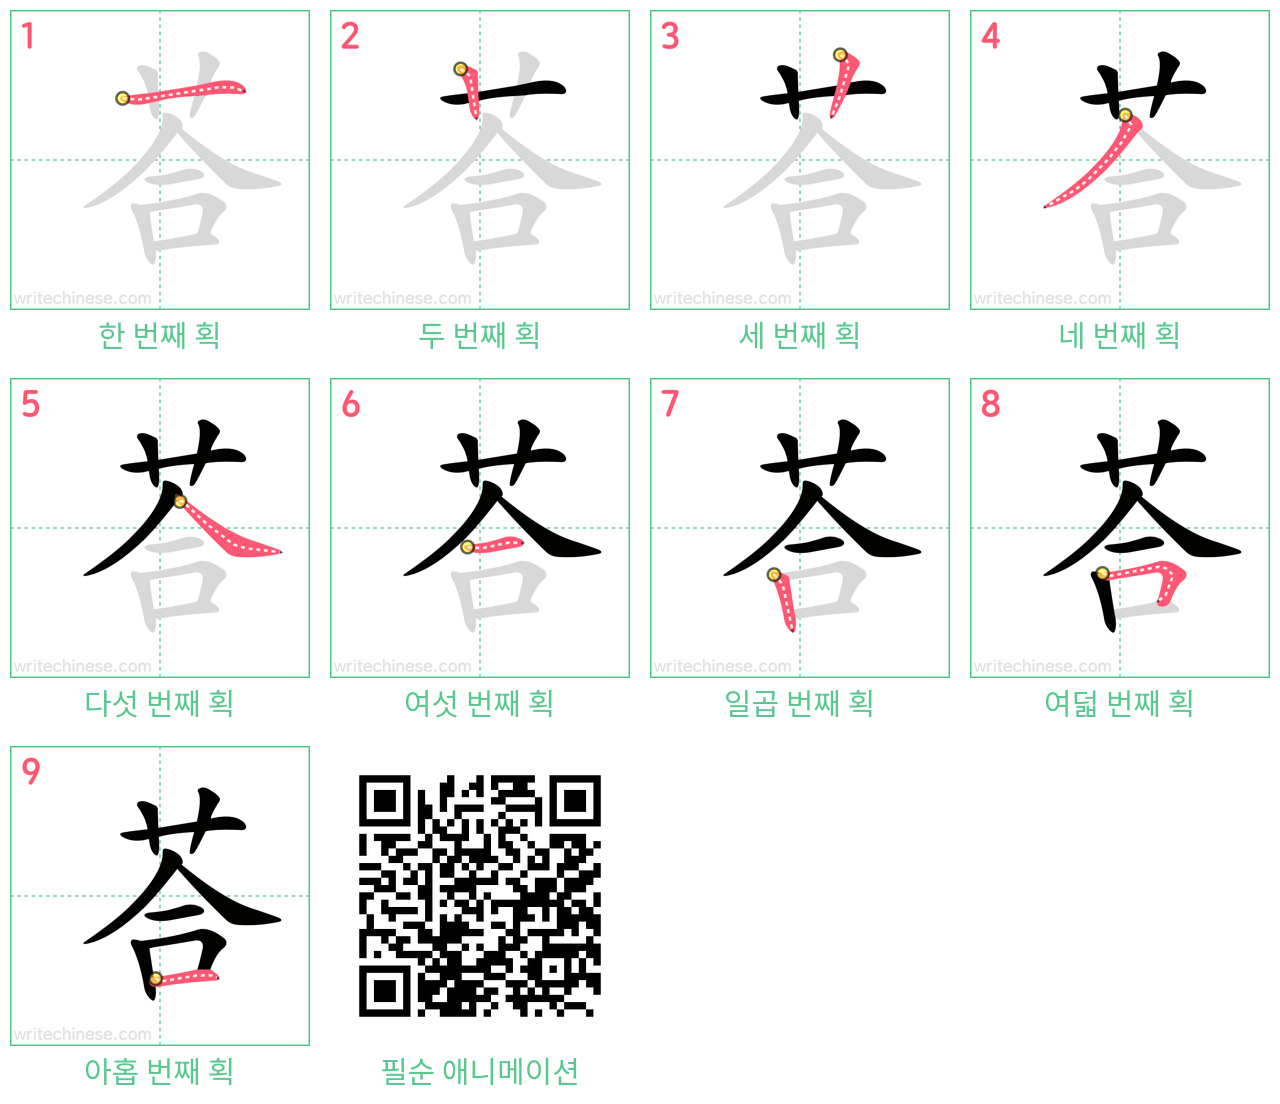 荅 step-by-step stroke order diagrams